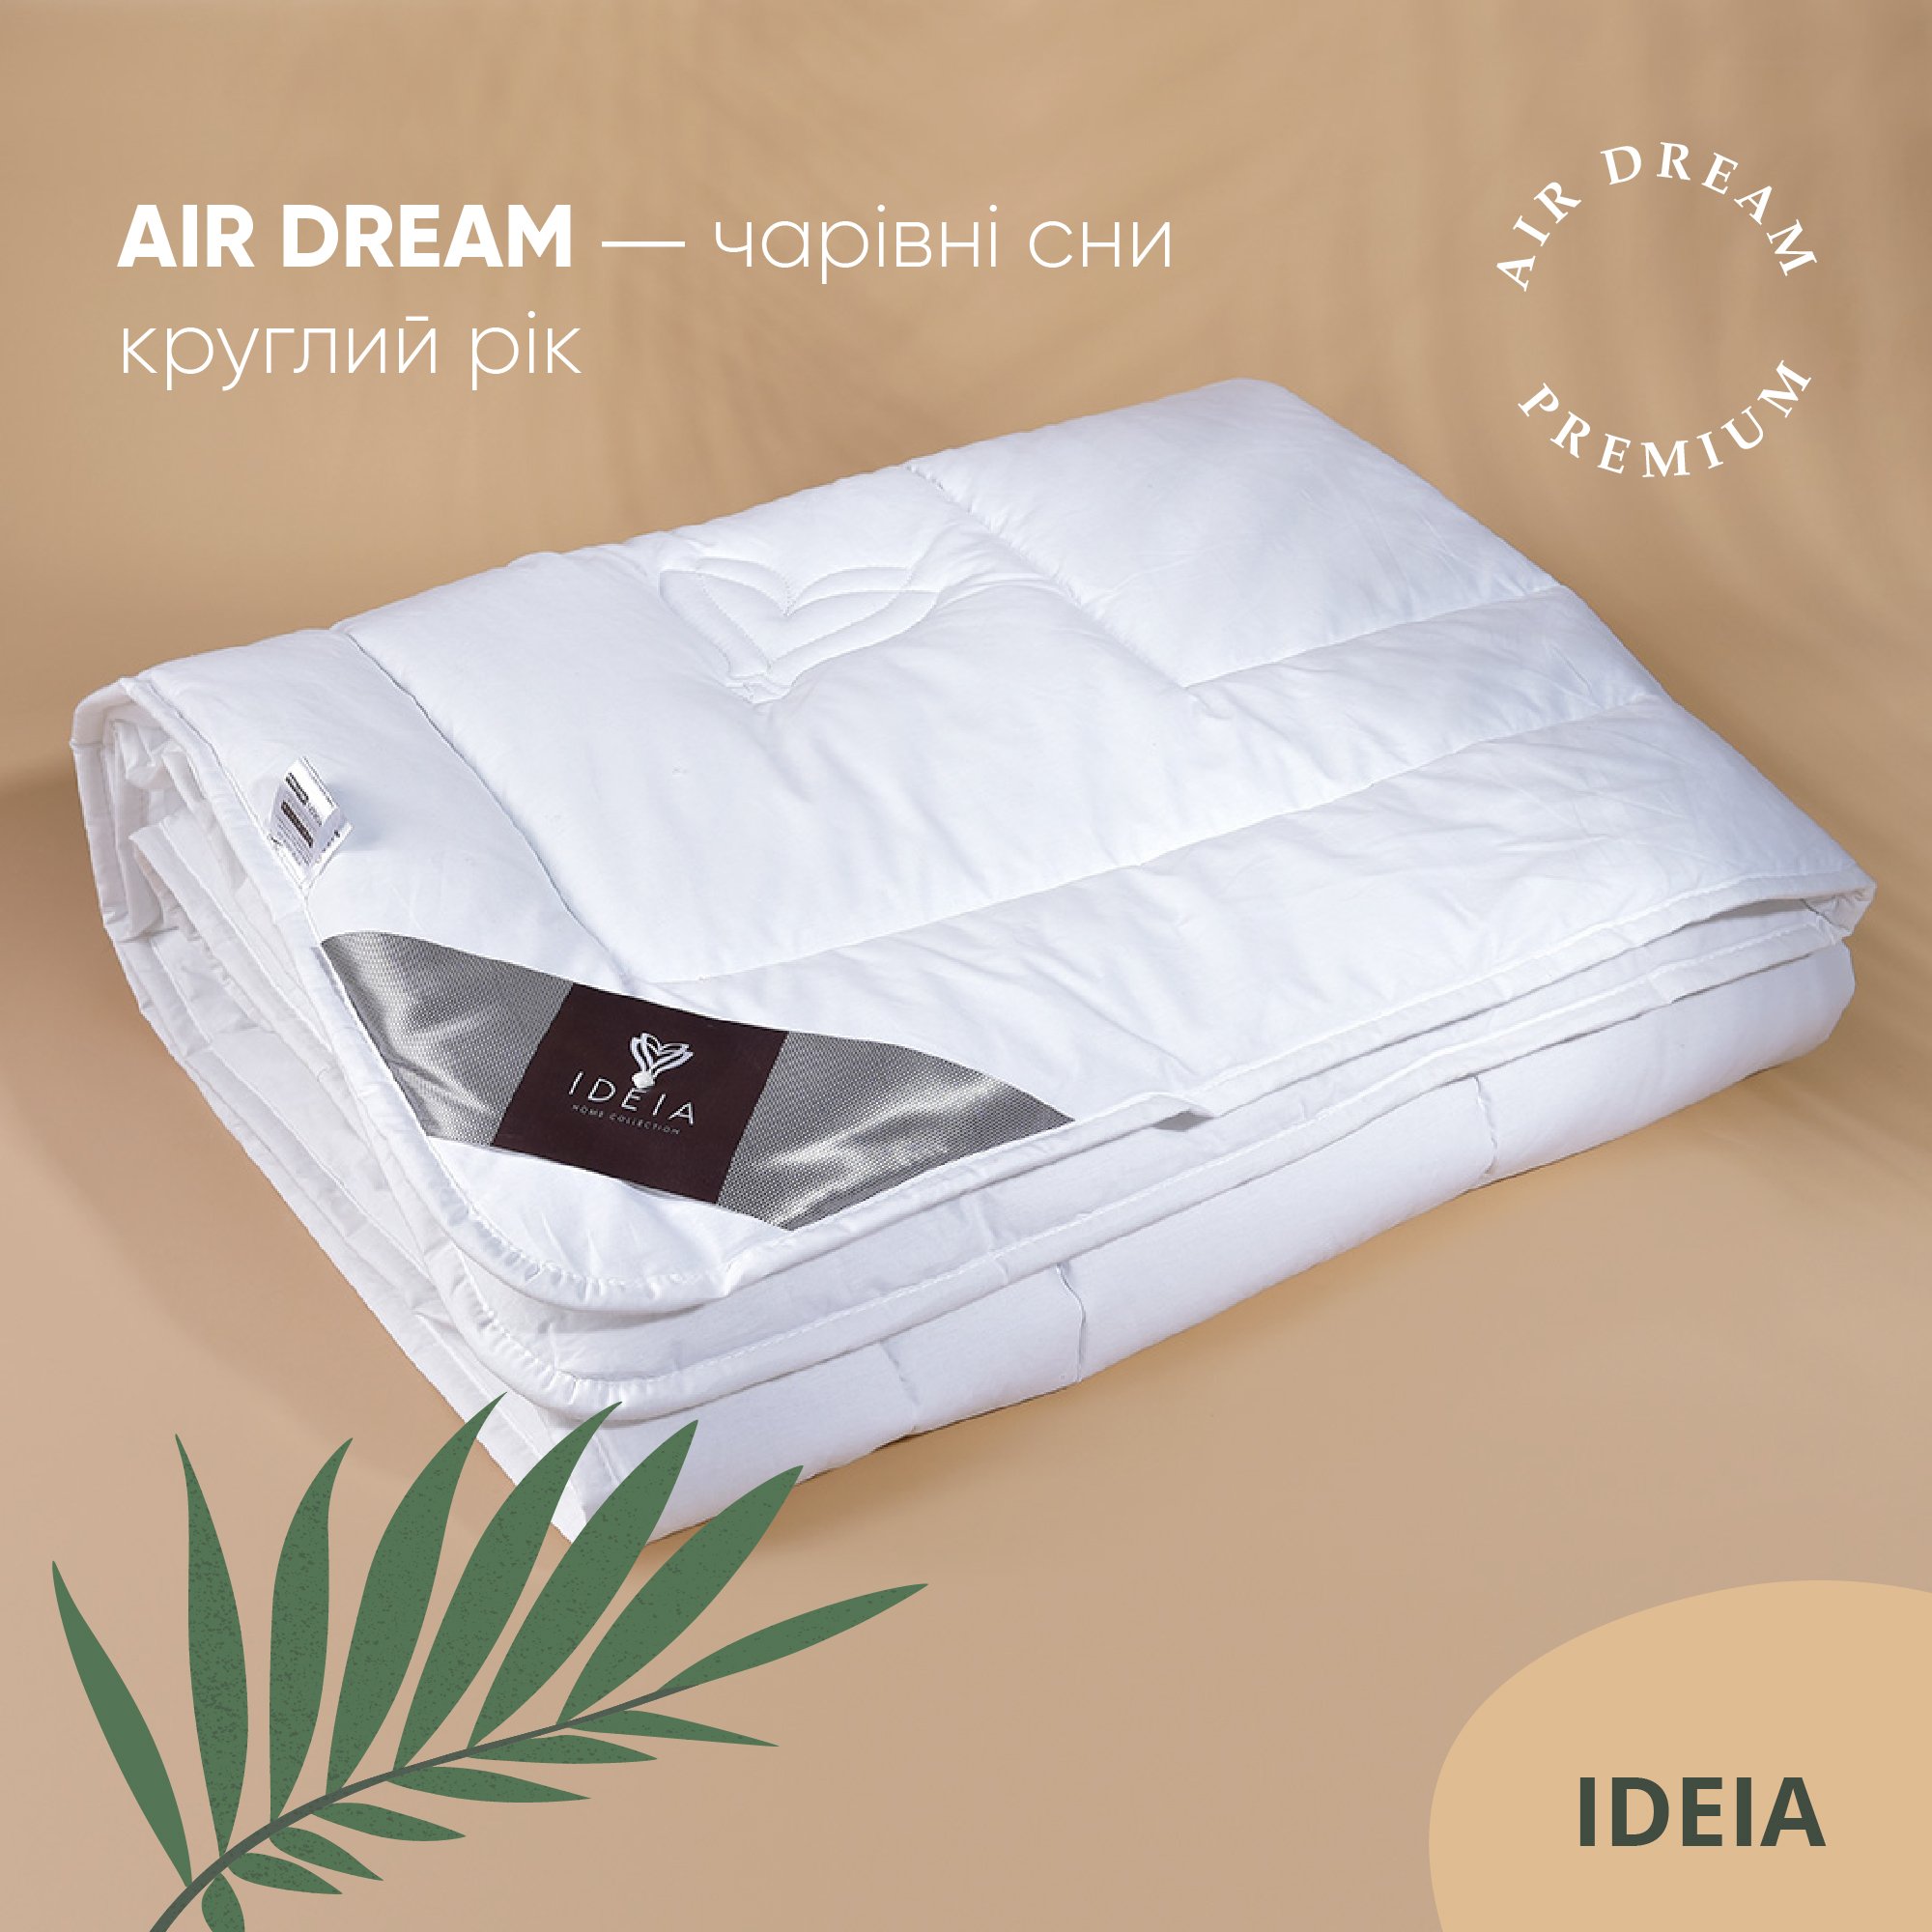 Одеяло Ideia Air Dream Premium зимнее, 210х140, белый (8-11694) - фото 3